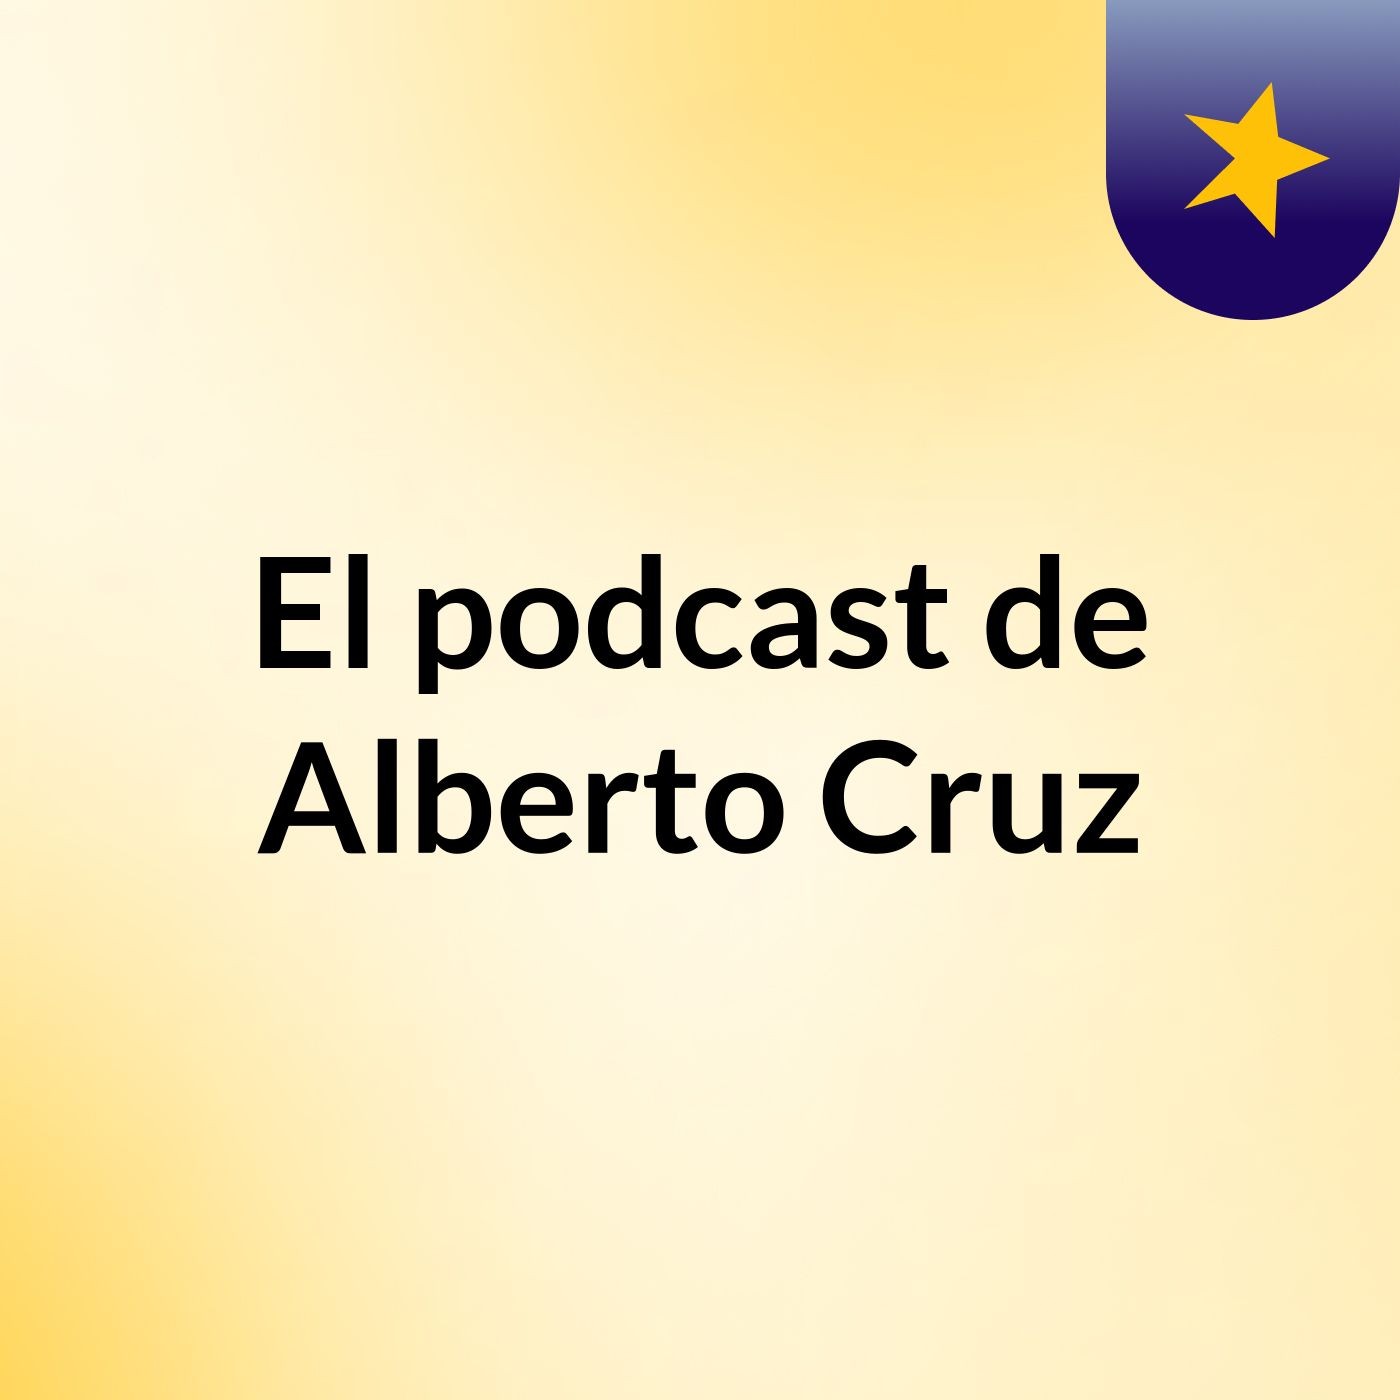 El podcast de Alberto Cruz